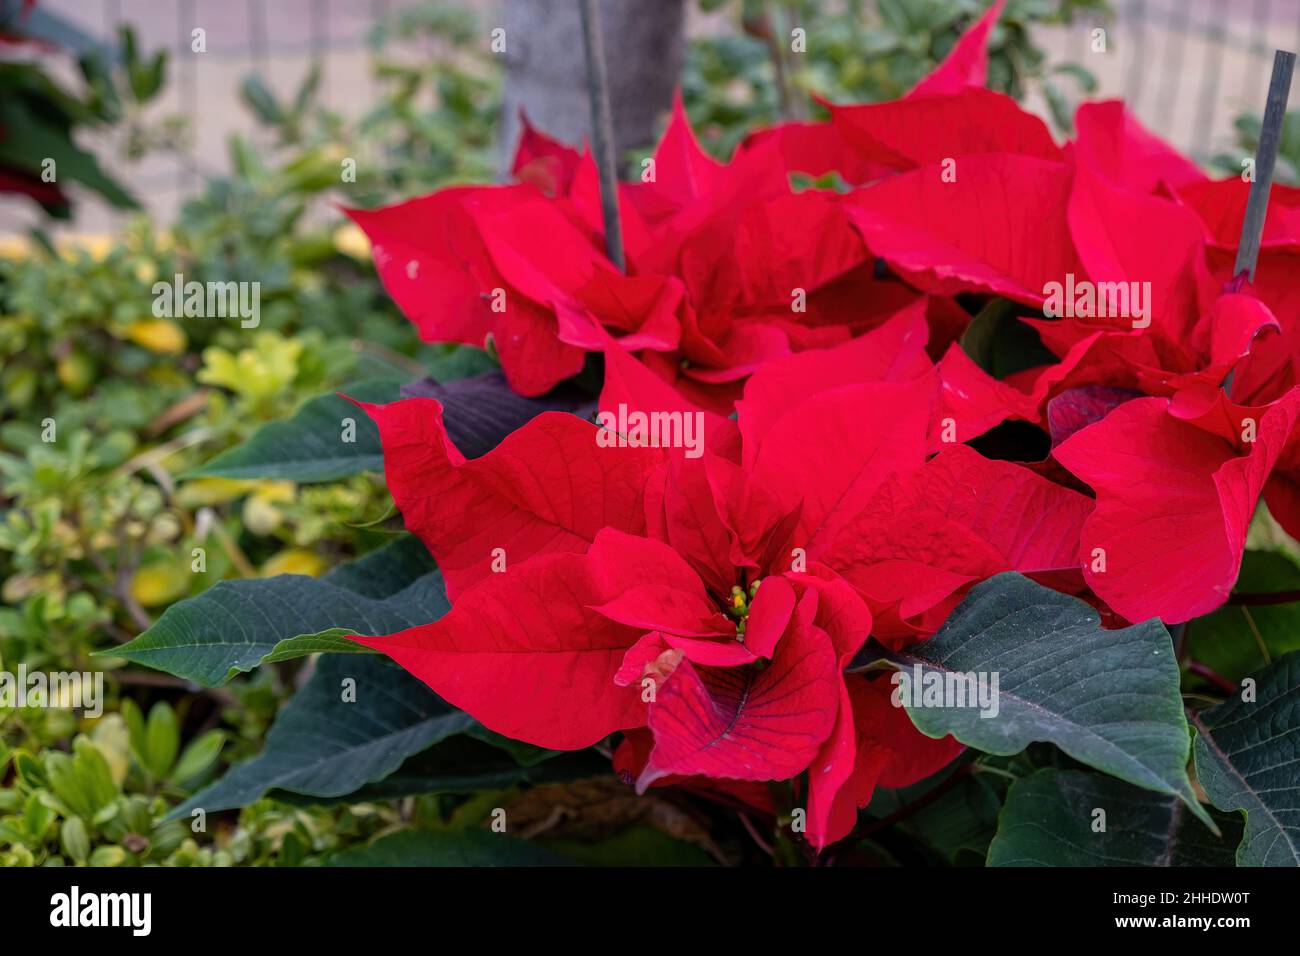 Weihnachtsblume Poinsettia, die rote Zierpflanze und das grüne Blatt aus der Nähe der Pflanze. Weihnachtsdekotation Stockfoto